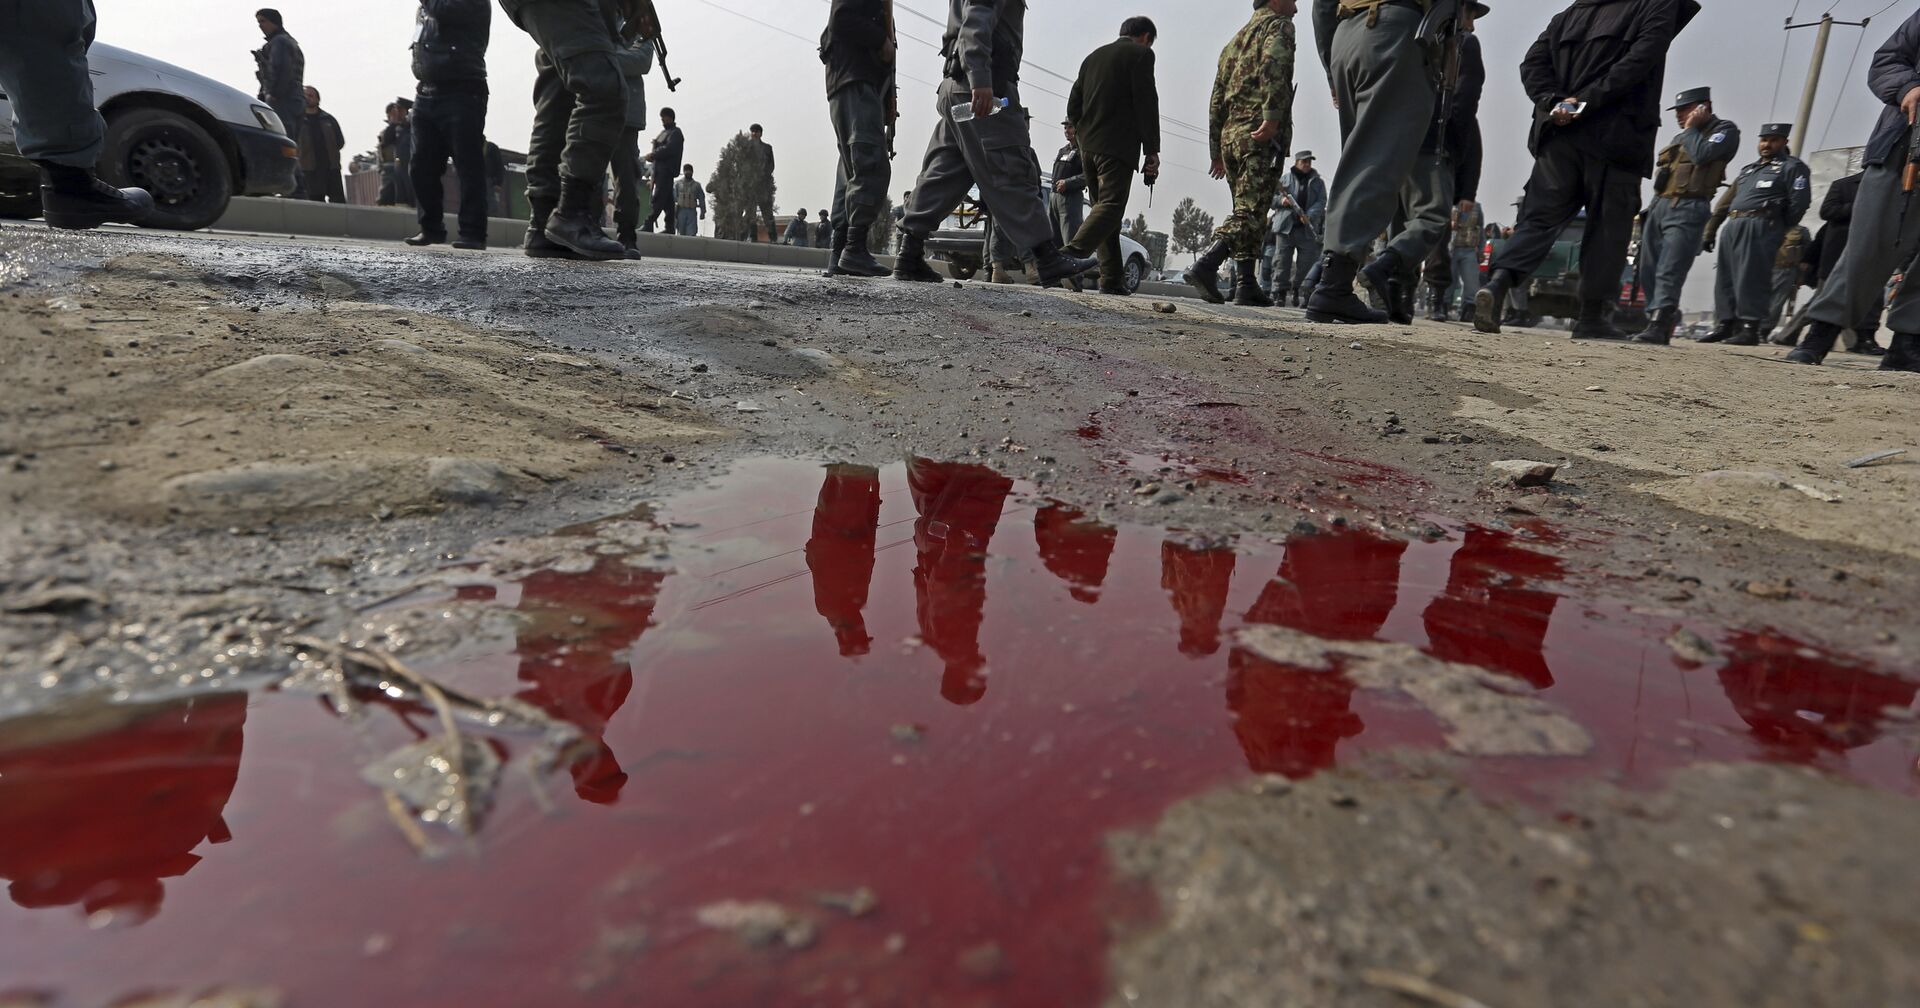 Люди отражаются в луже крови, Кабул, Афганистан - ИноСМИ, 1920, 13.11.2020